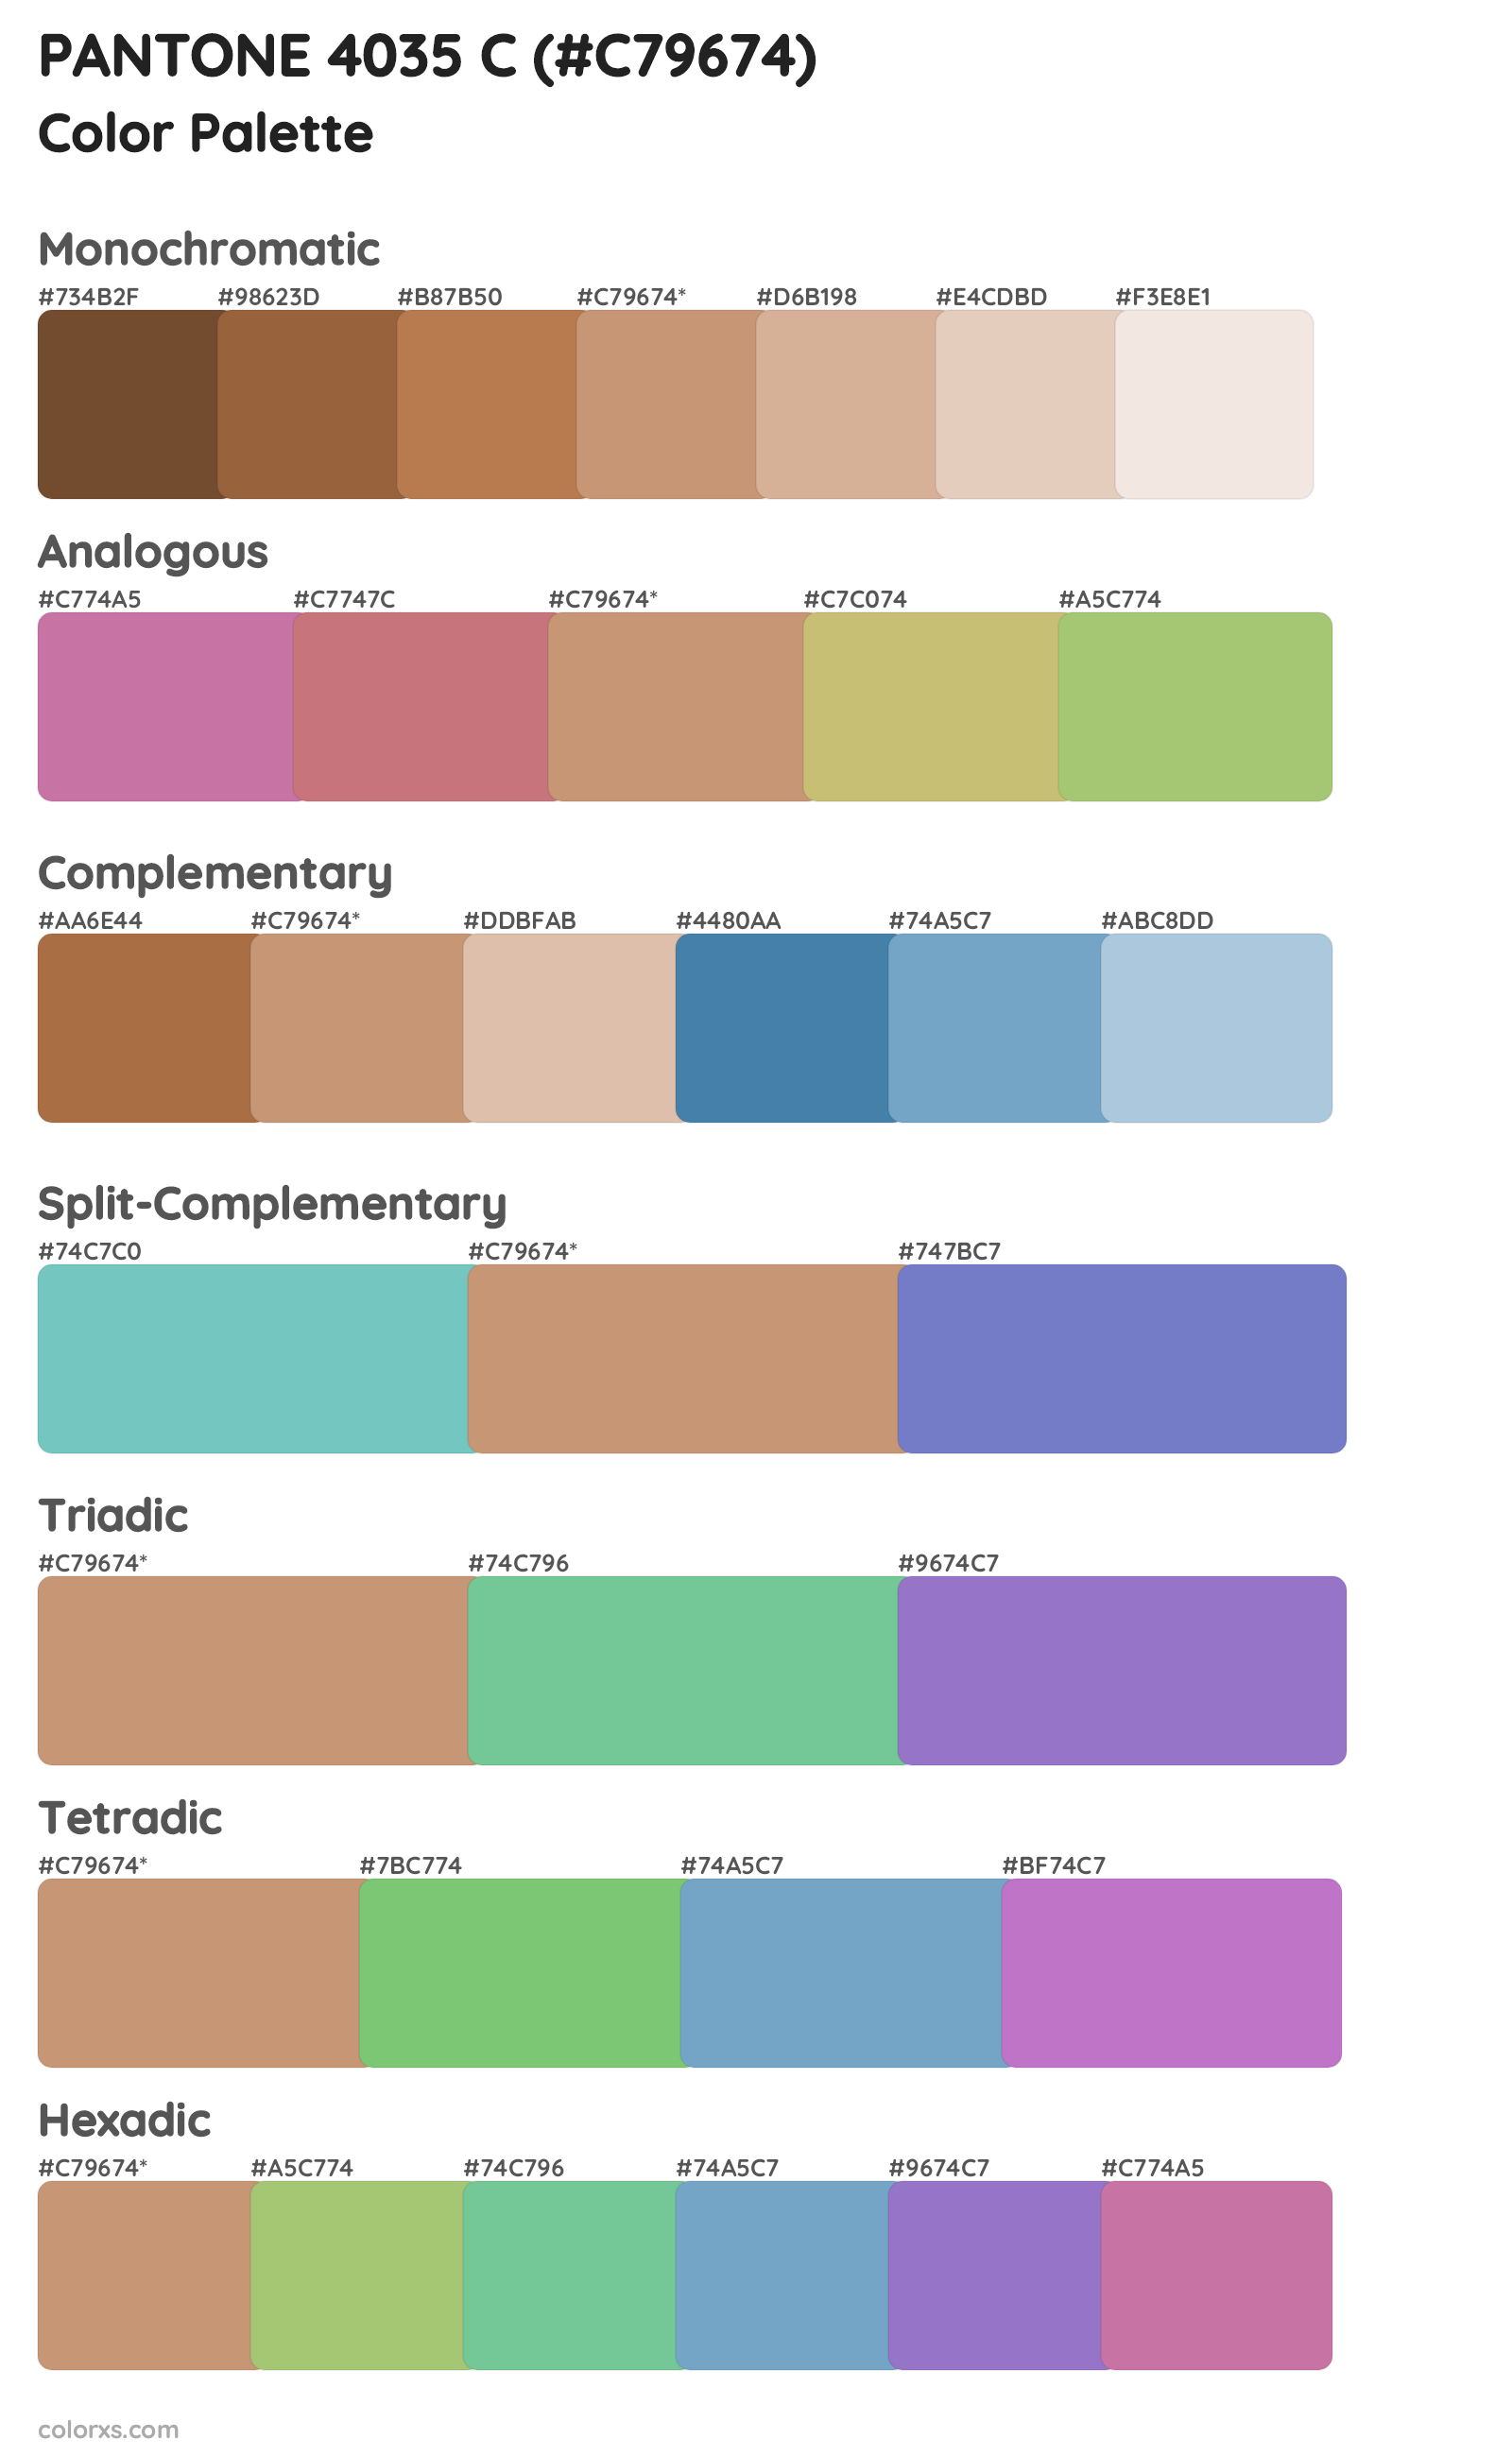 PANTONE 4035 C Color Scheme Palettes